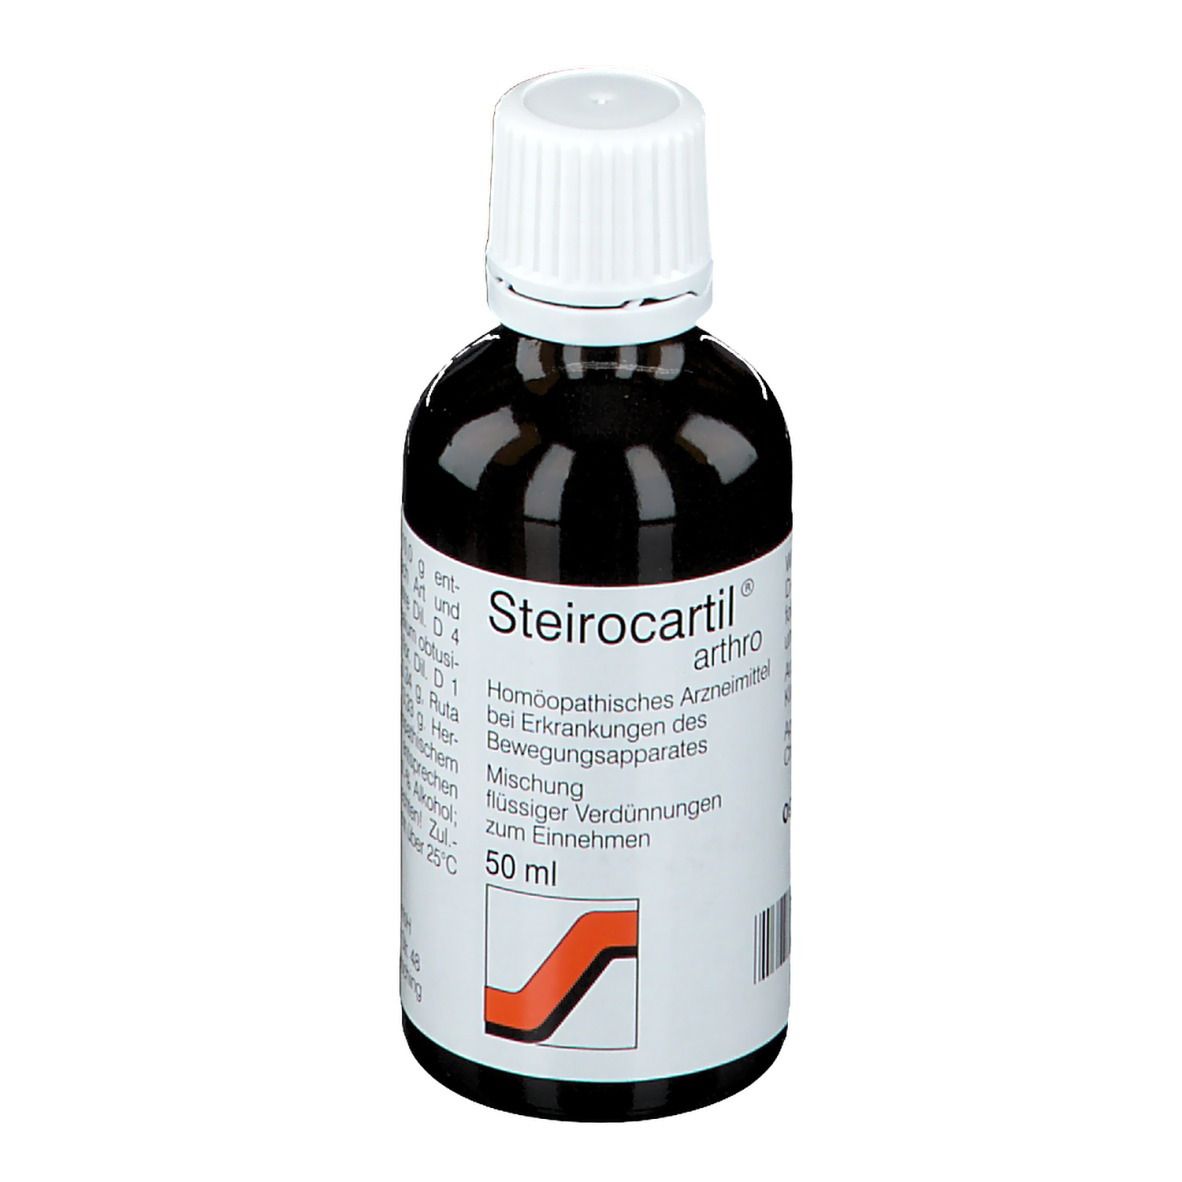 Steirocartil® Arthro